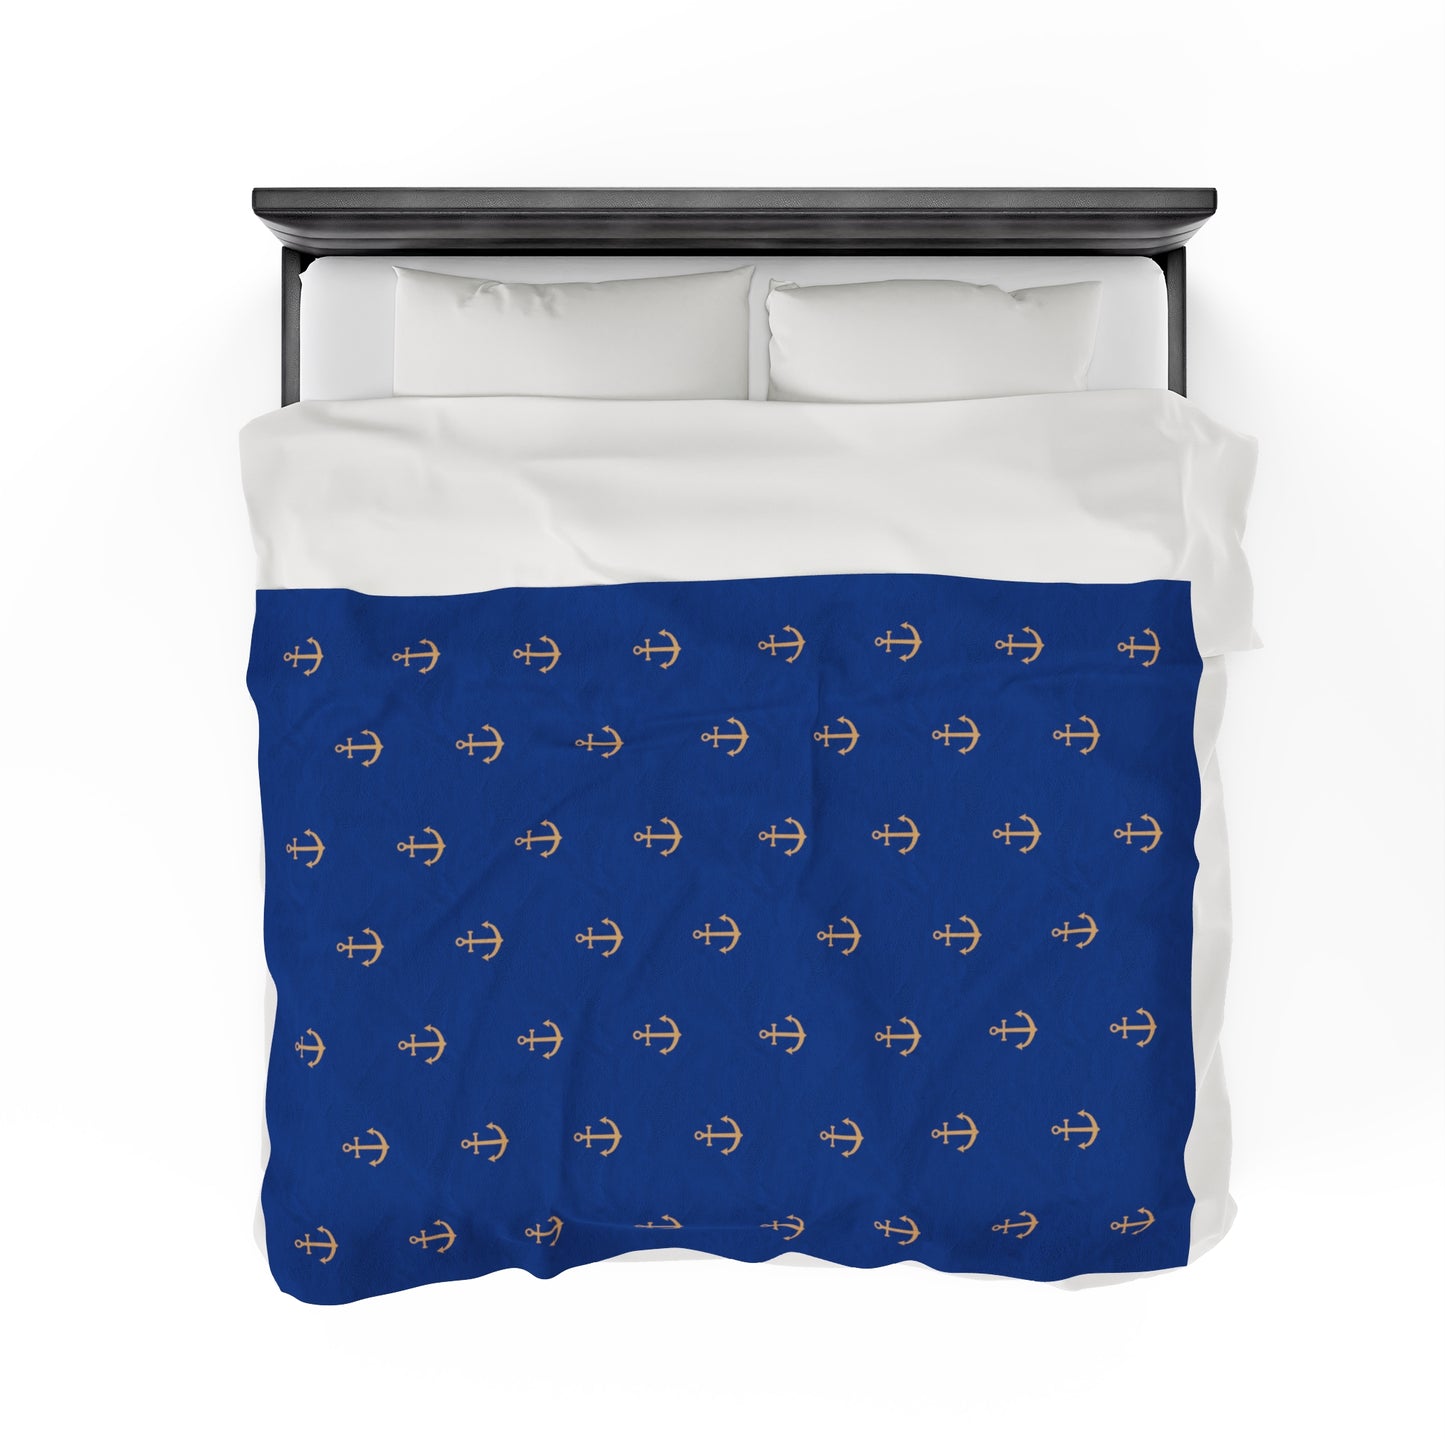 Anchors for days - Velveteen Plush Blanket (Blue)